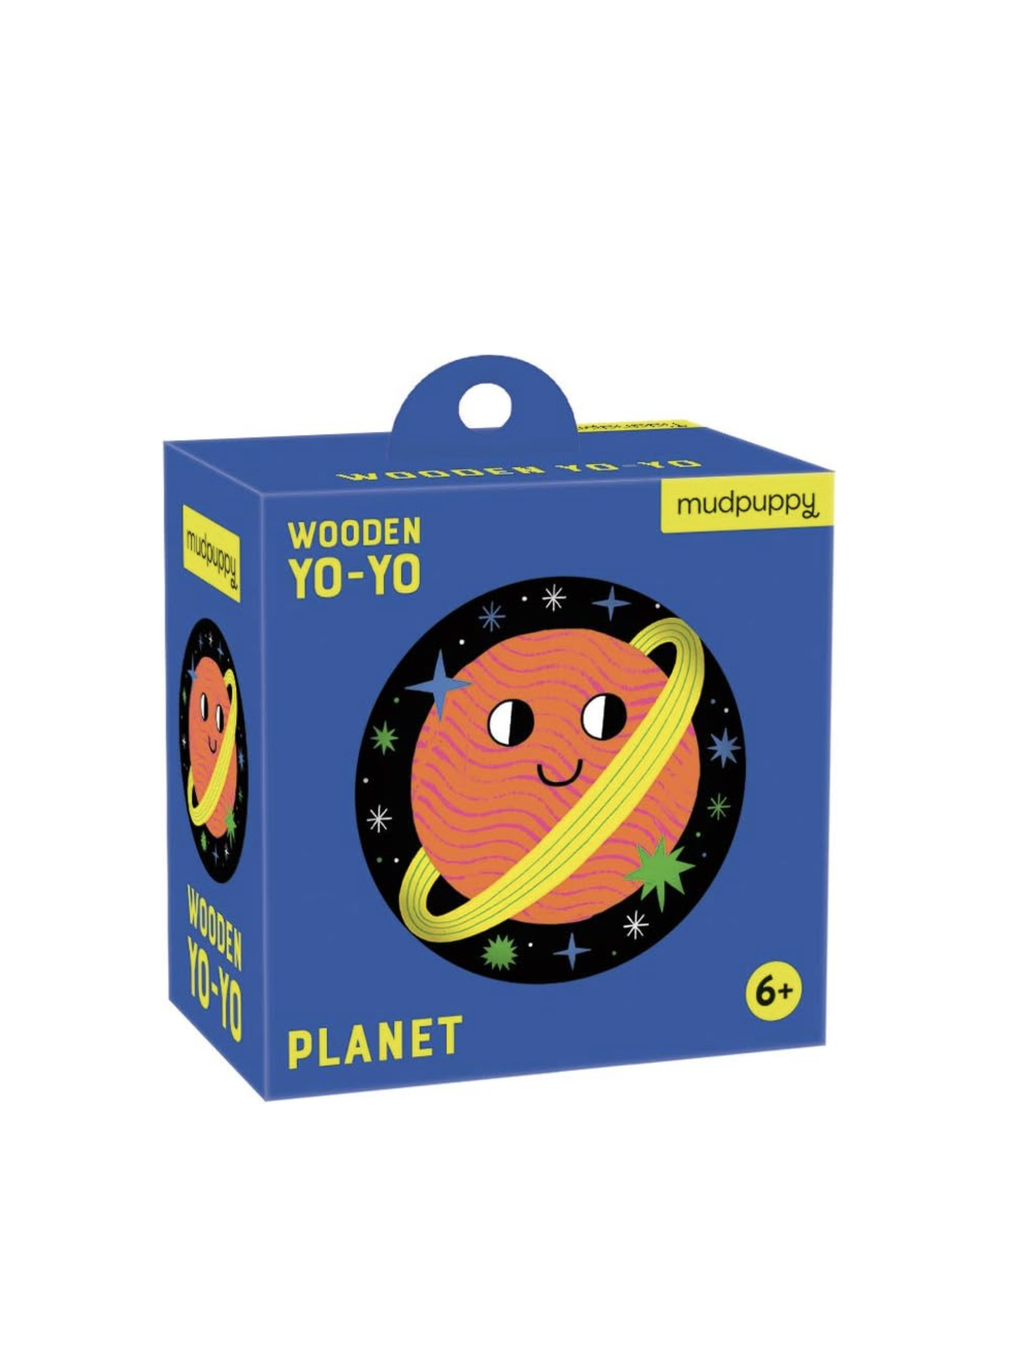 Planet Wooden Yo-Yo